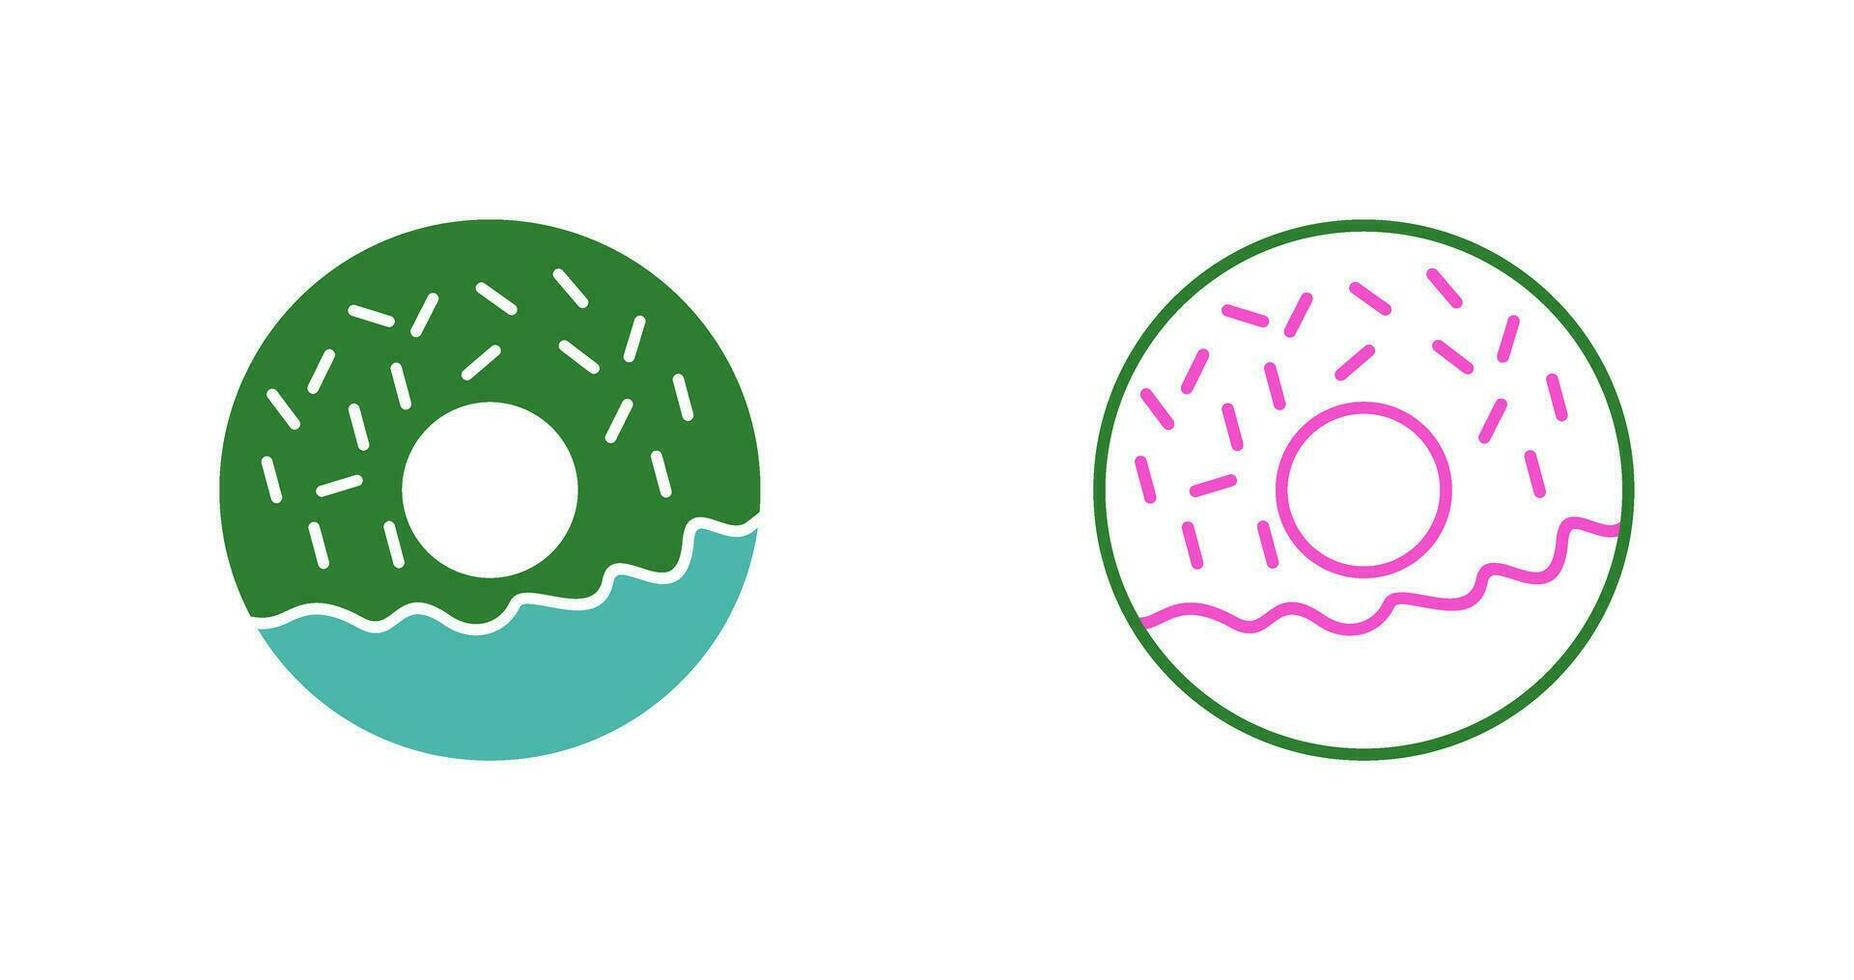 ícone de vetor de donut